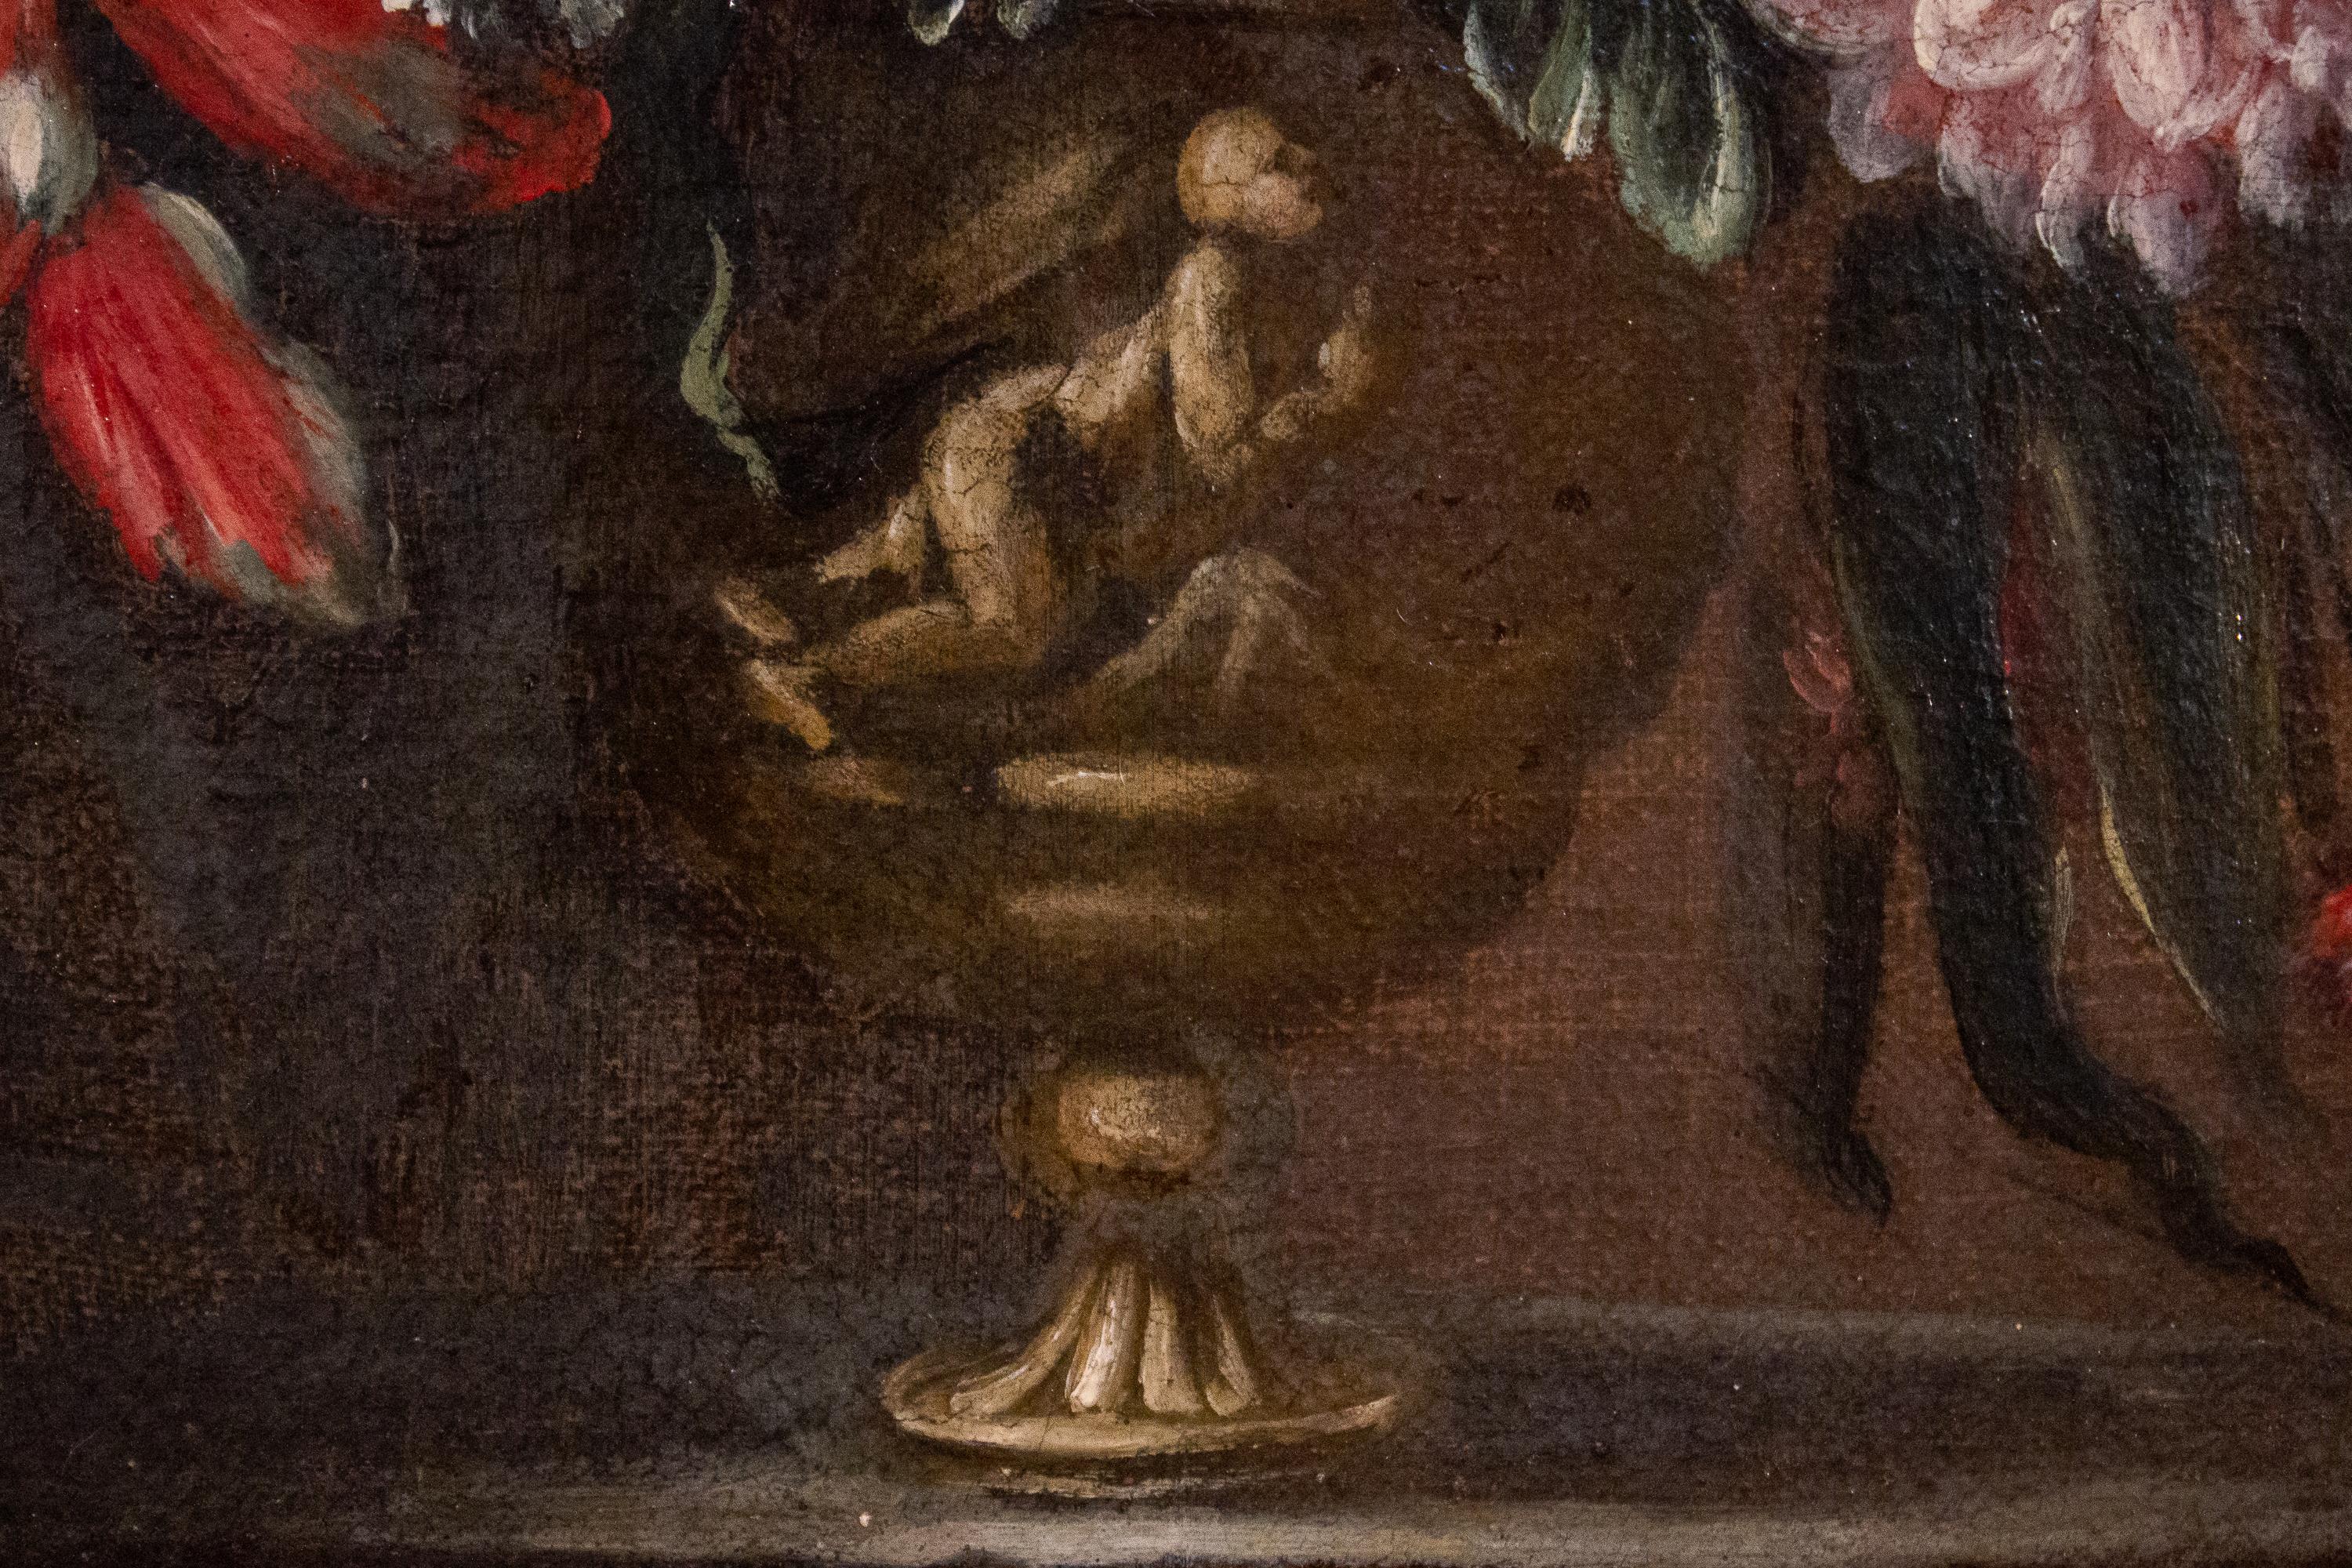 Paar sehr dekorative italienische Blumenstillleben mit Vasen und klassischen Figuren .
18. Jahrhundert, Öl auf Leinwand,  mit originalen vergoldeten Holzrahmen. 
Dieses Paar ist ein hervorragendes Beispiel für die italienische  trend zur Nachahmung